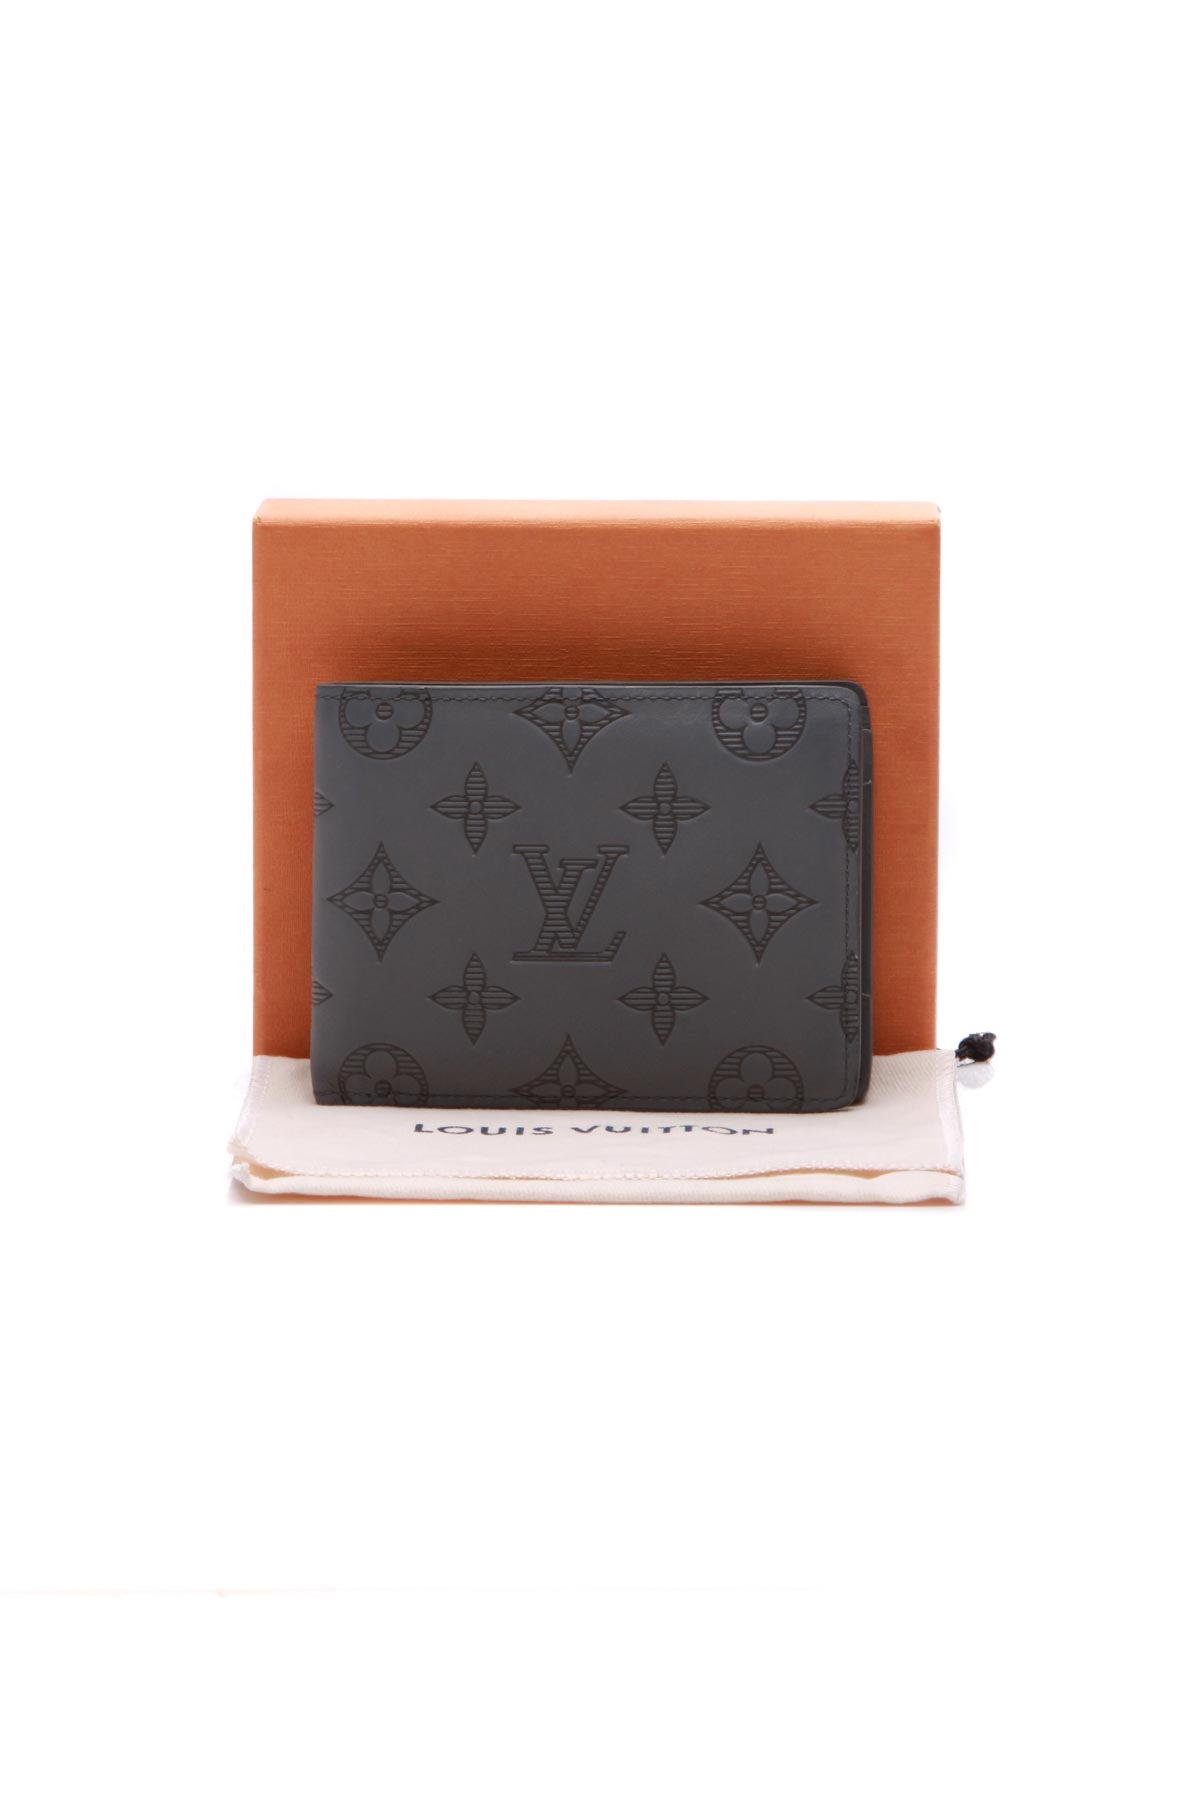 Louis Vuitton, Bags, Louis Vuittonmultiple Wallet